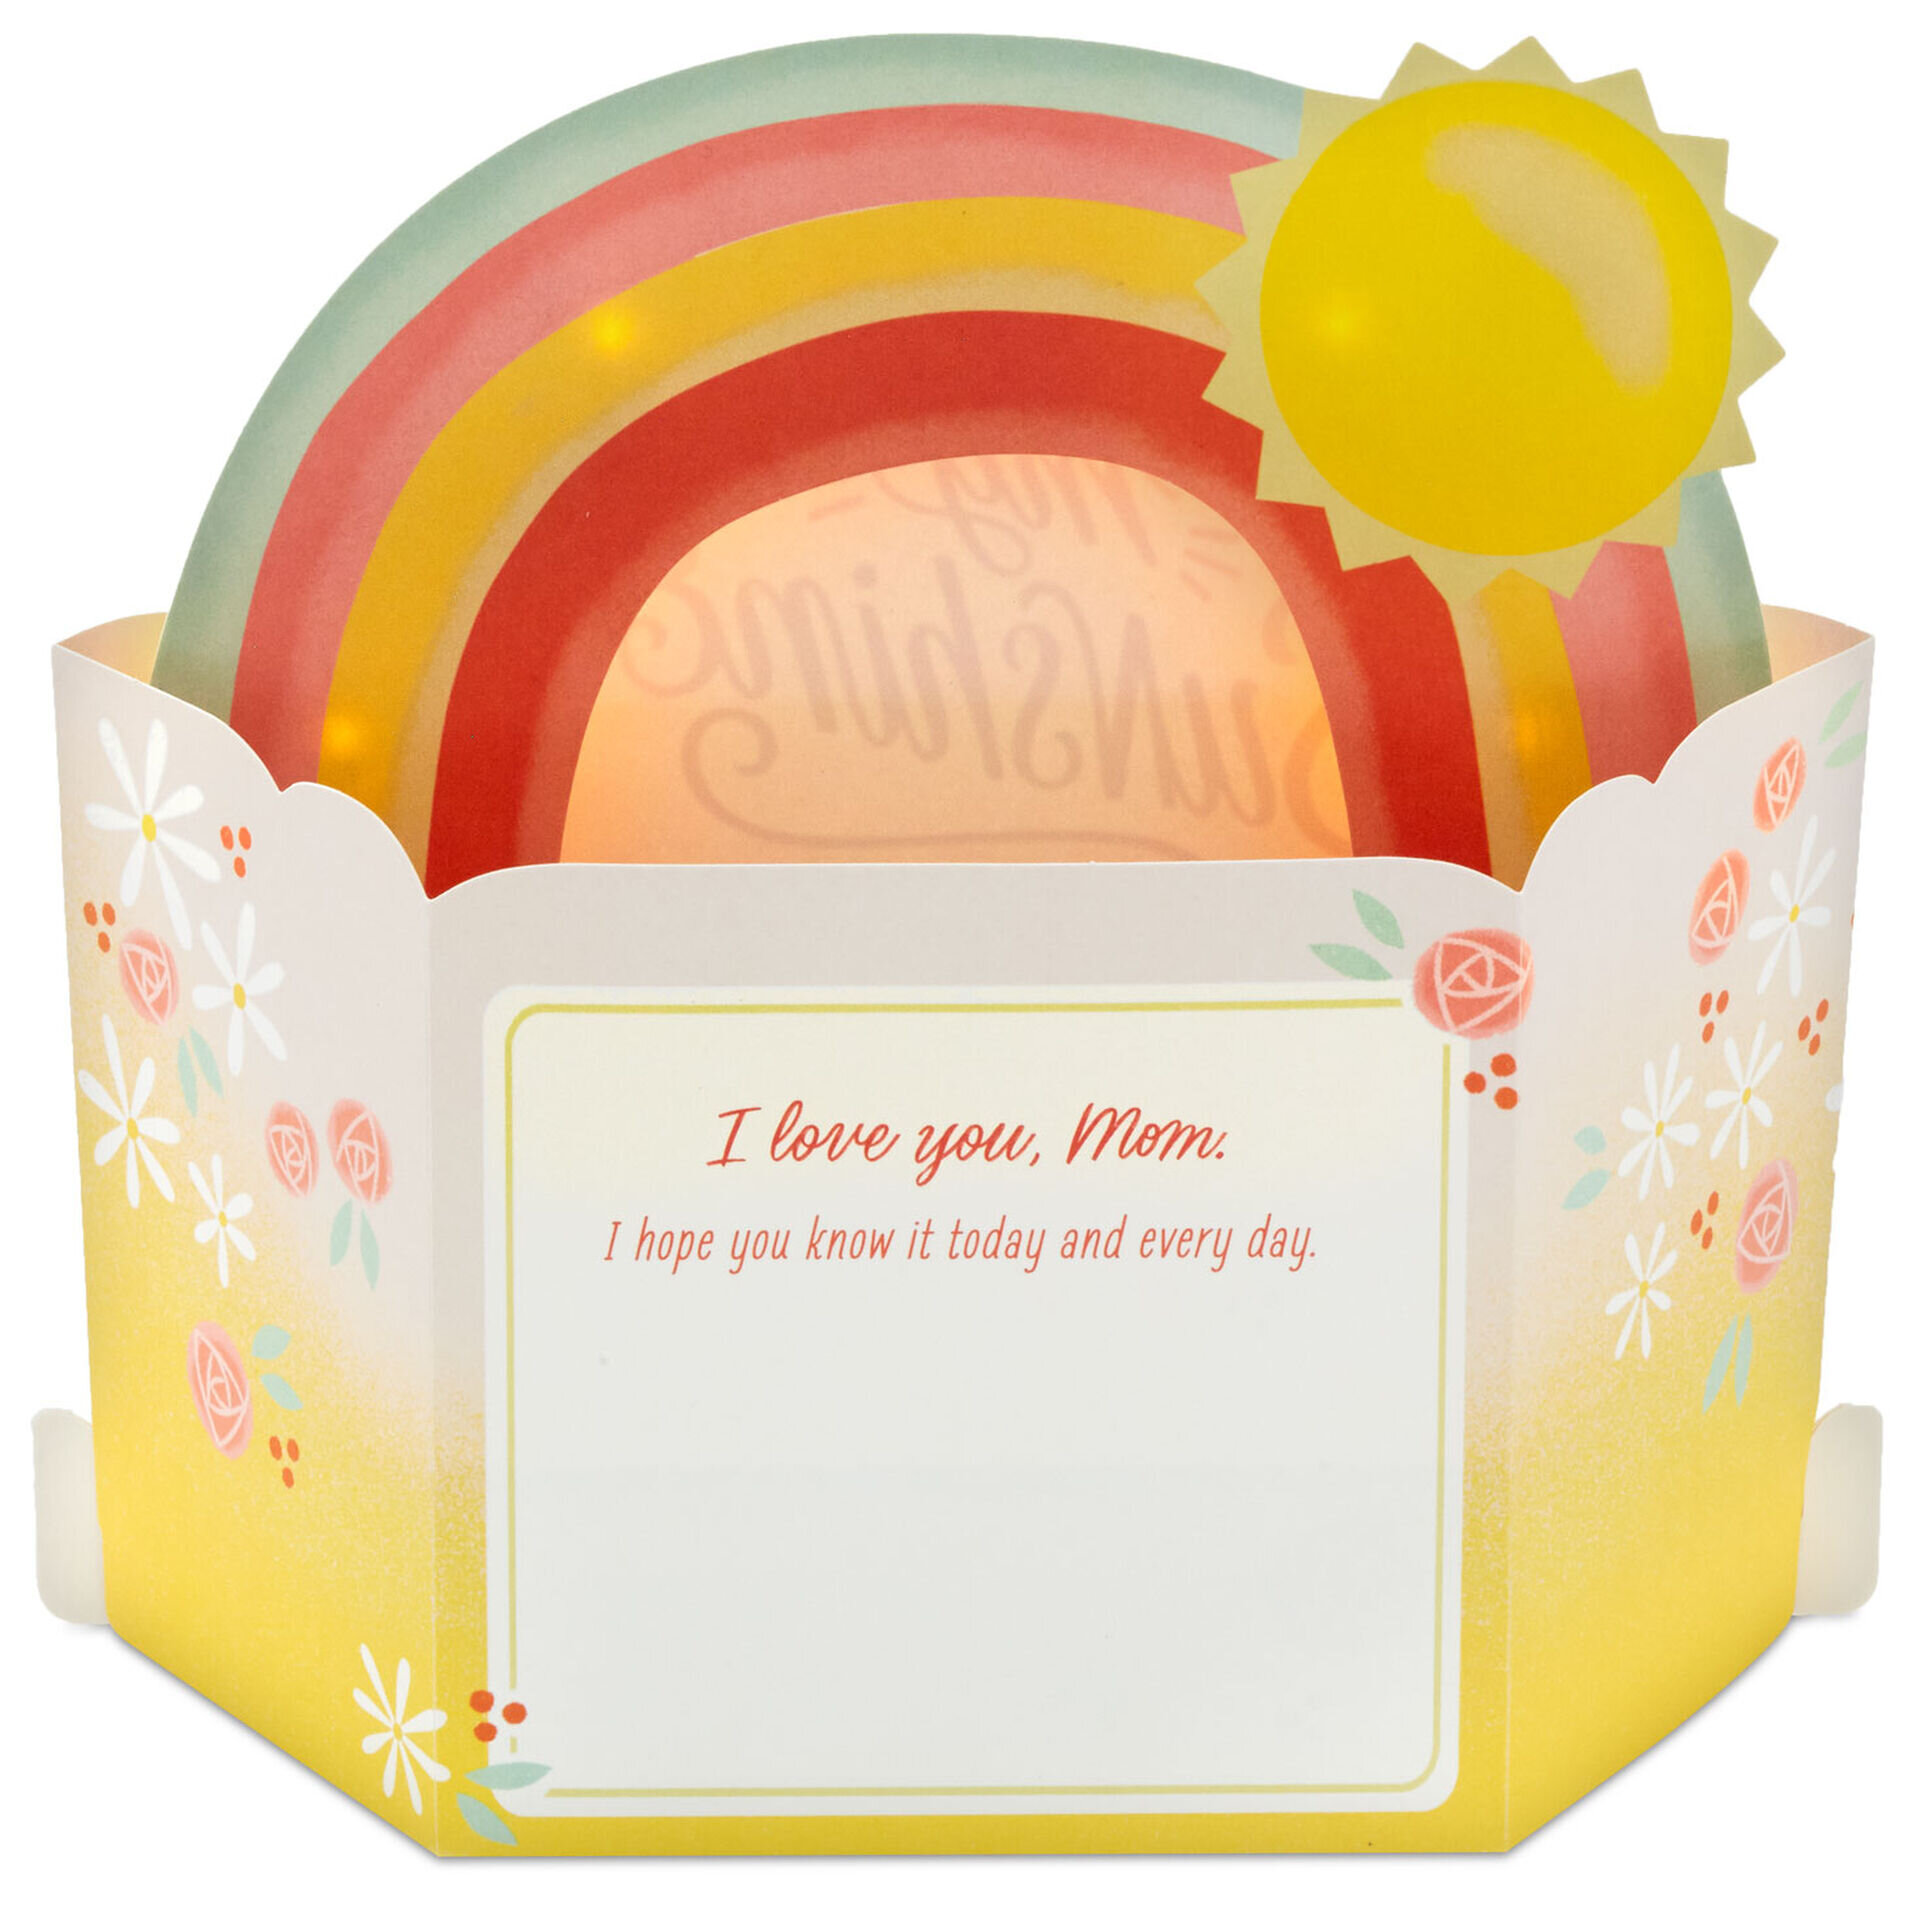 Rainbow-&-Sun-3D-PopUp-Music-&-Light-Love-Card-for-Mom_999MEJ2212_02.jpeg